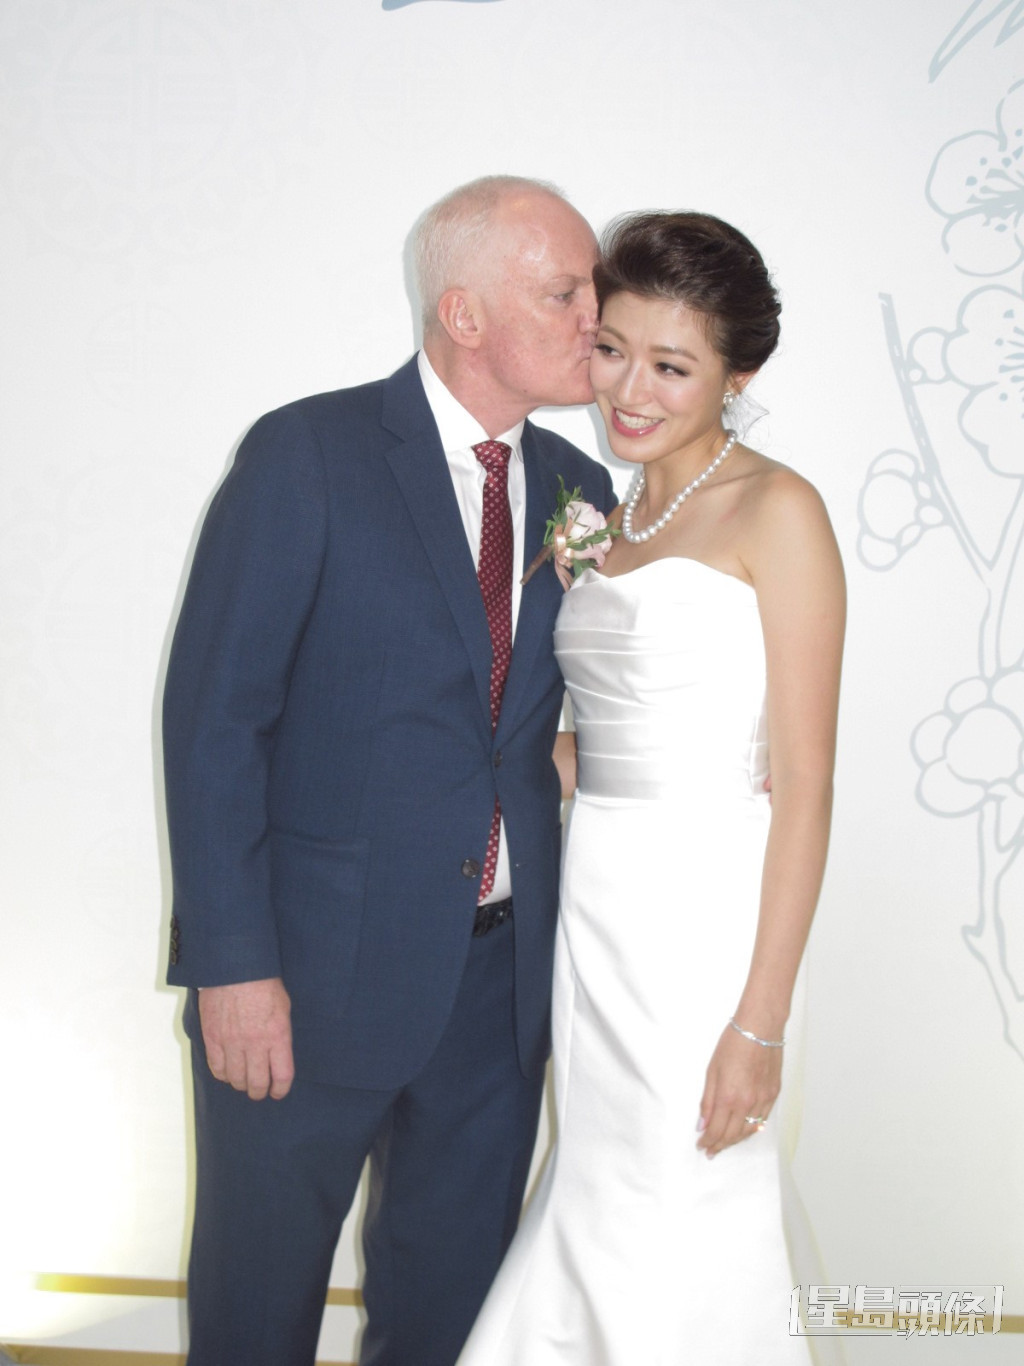 李姿敏2017年嫁給澳洲籍練馬師賀賢。